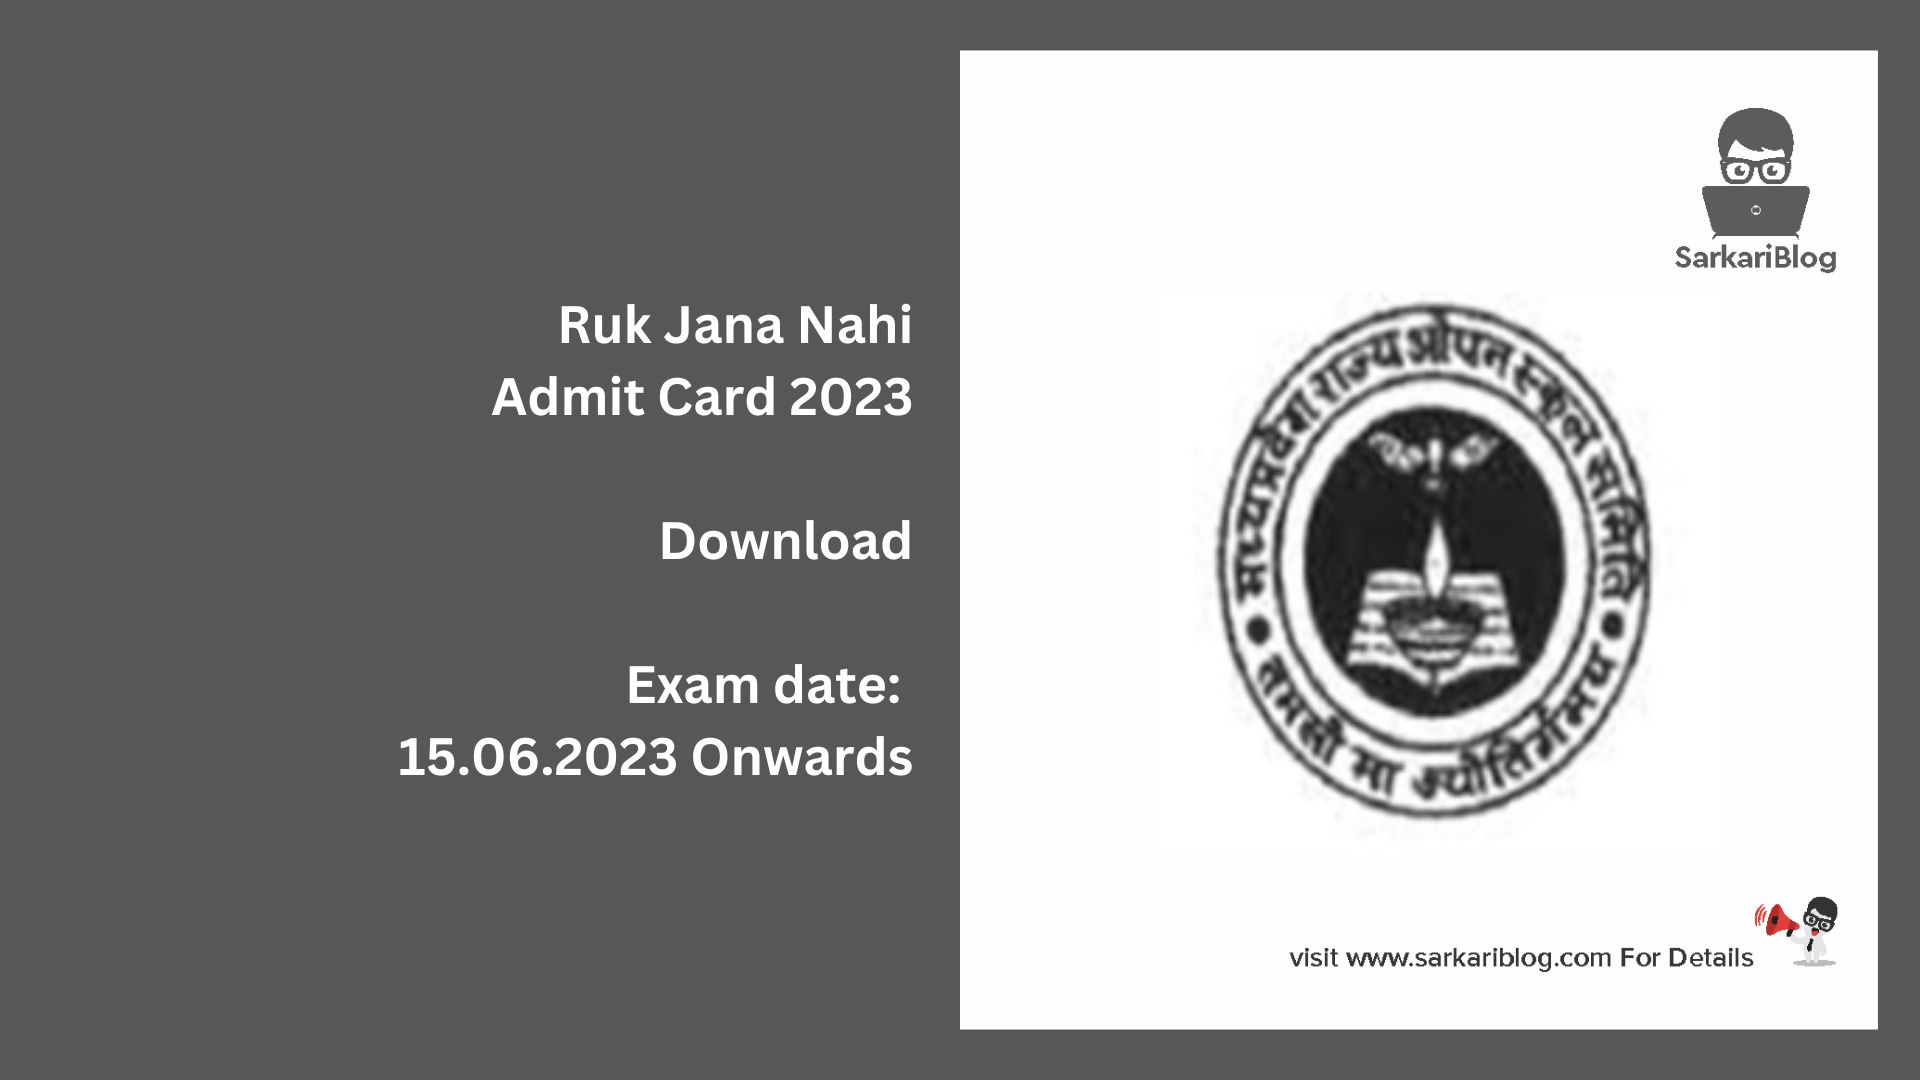 Ruk Jana Nahi Admit Card 2023